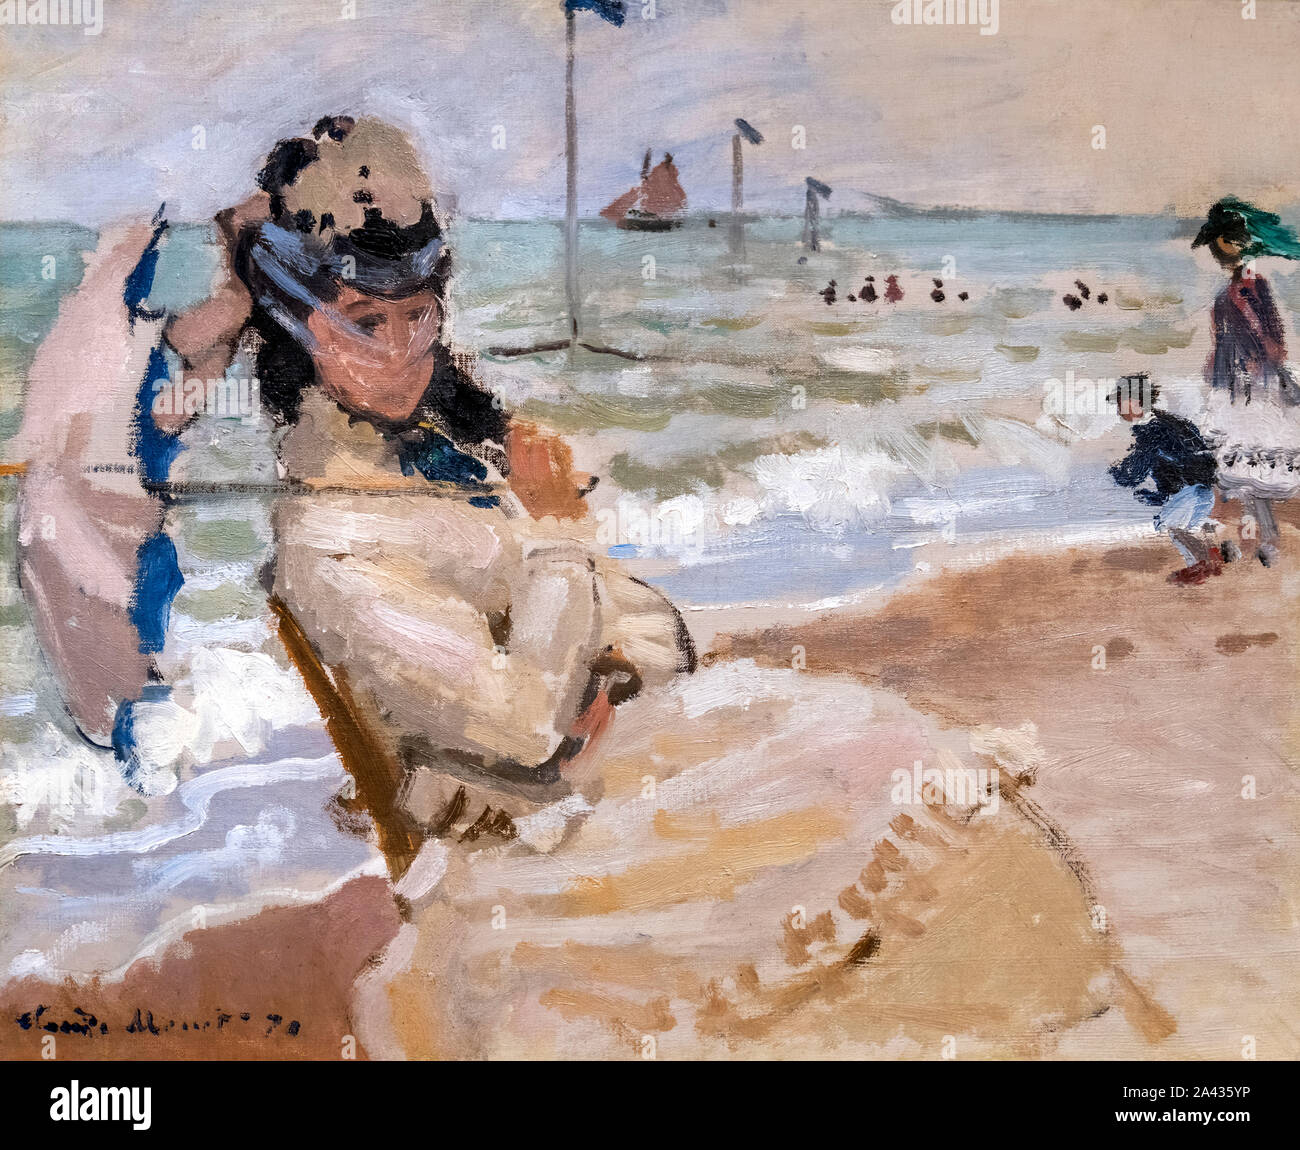 Camille sur la plage de Trouville par Claude Monet (1840-1926), huile sur toile, 1870 Banque D'Images